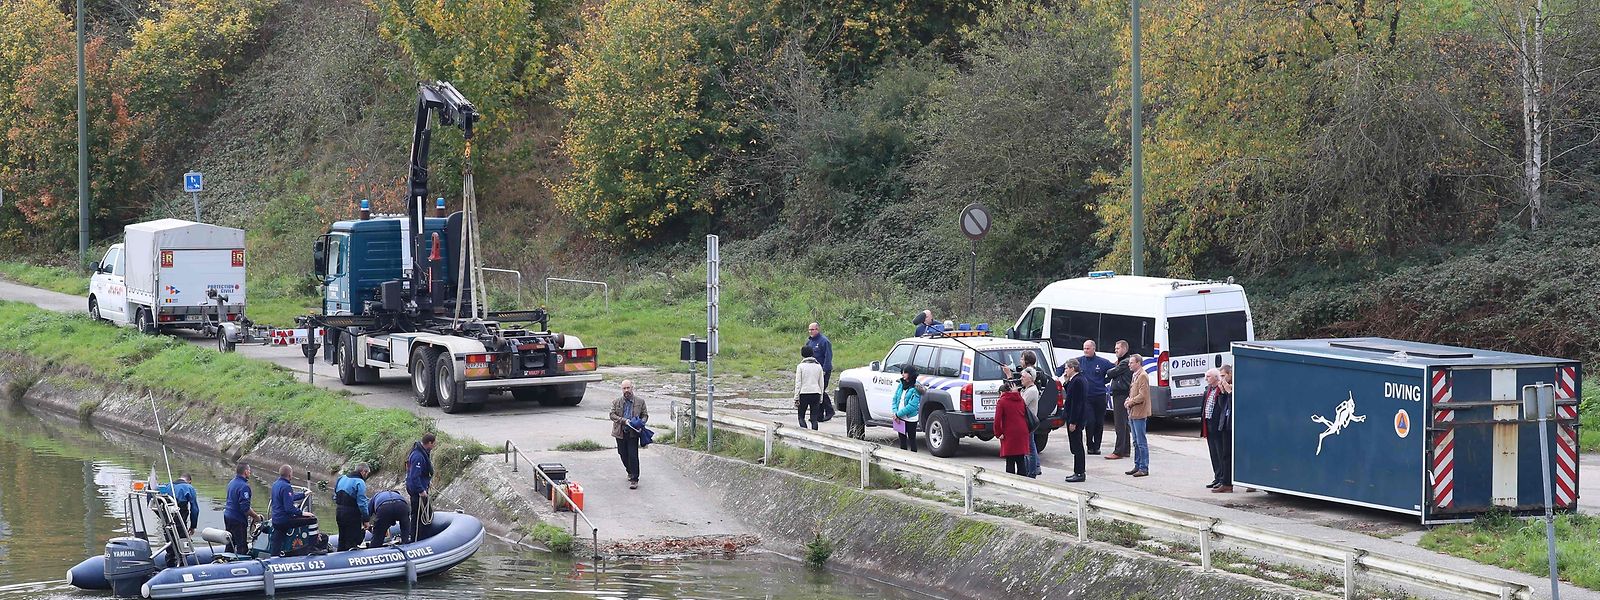 En 2017, des recherches avaient été relancées le long du canal de Bruxelles par des policiers.